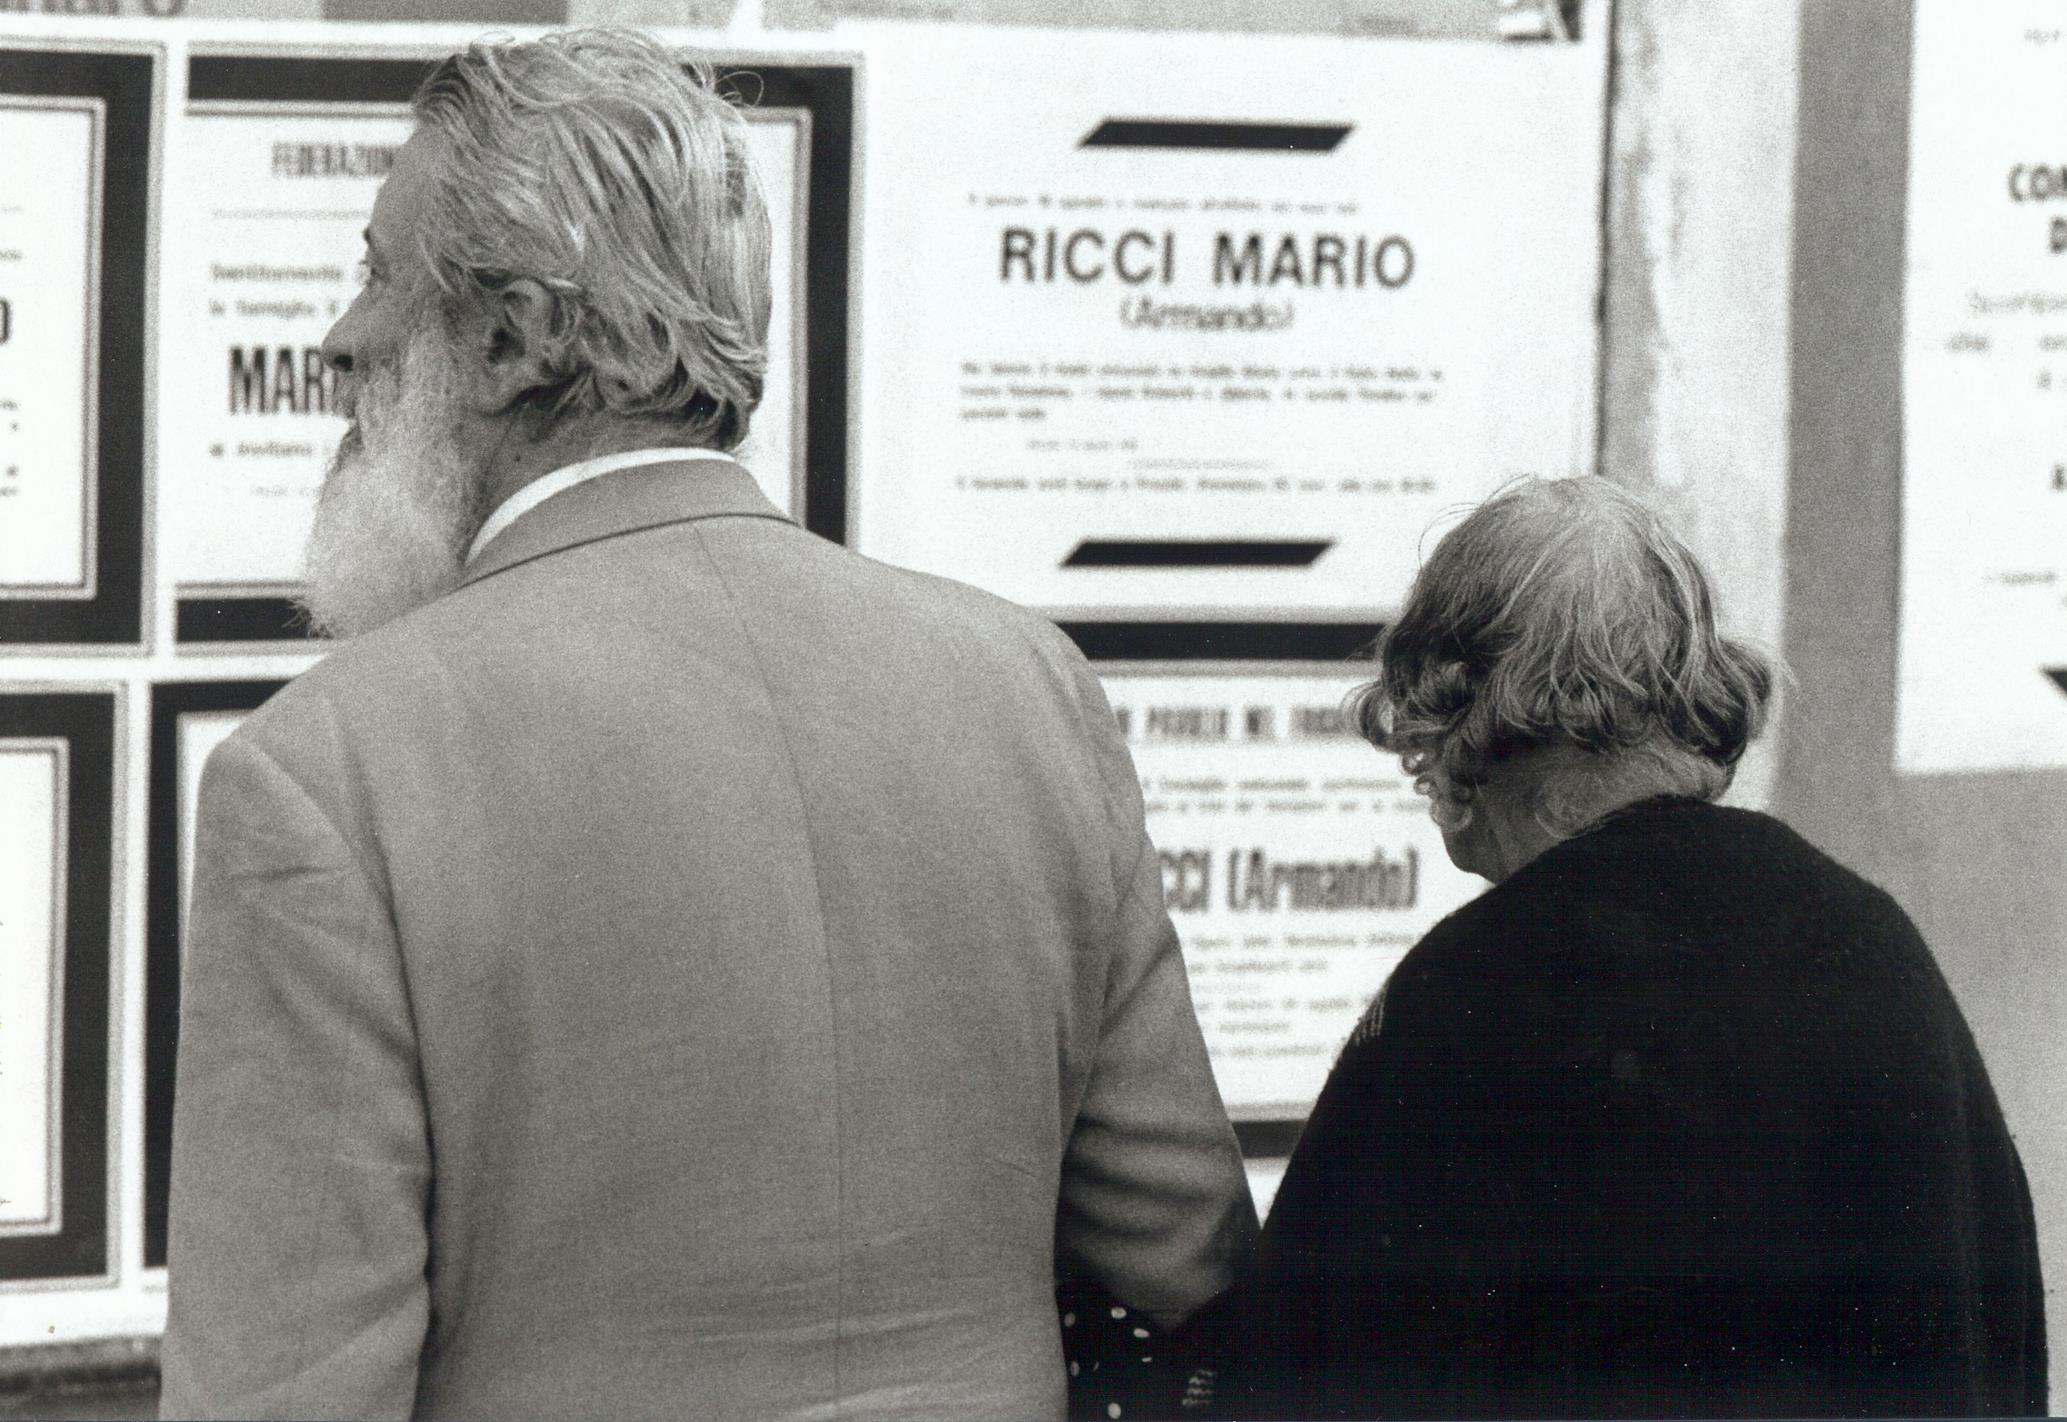 Anziani osservano gli annunci mortuari di Mario Ricci. Foto tratta dalla mostra Mario Ricci "Armando" dal mito alla storia - con Armando nel cuore